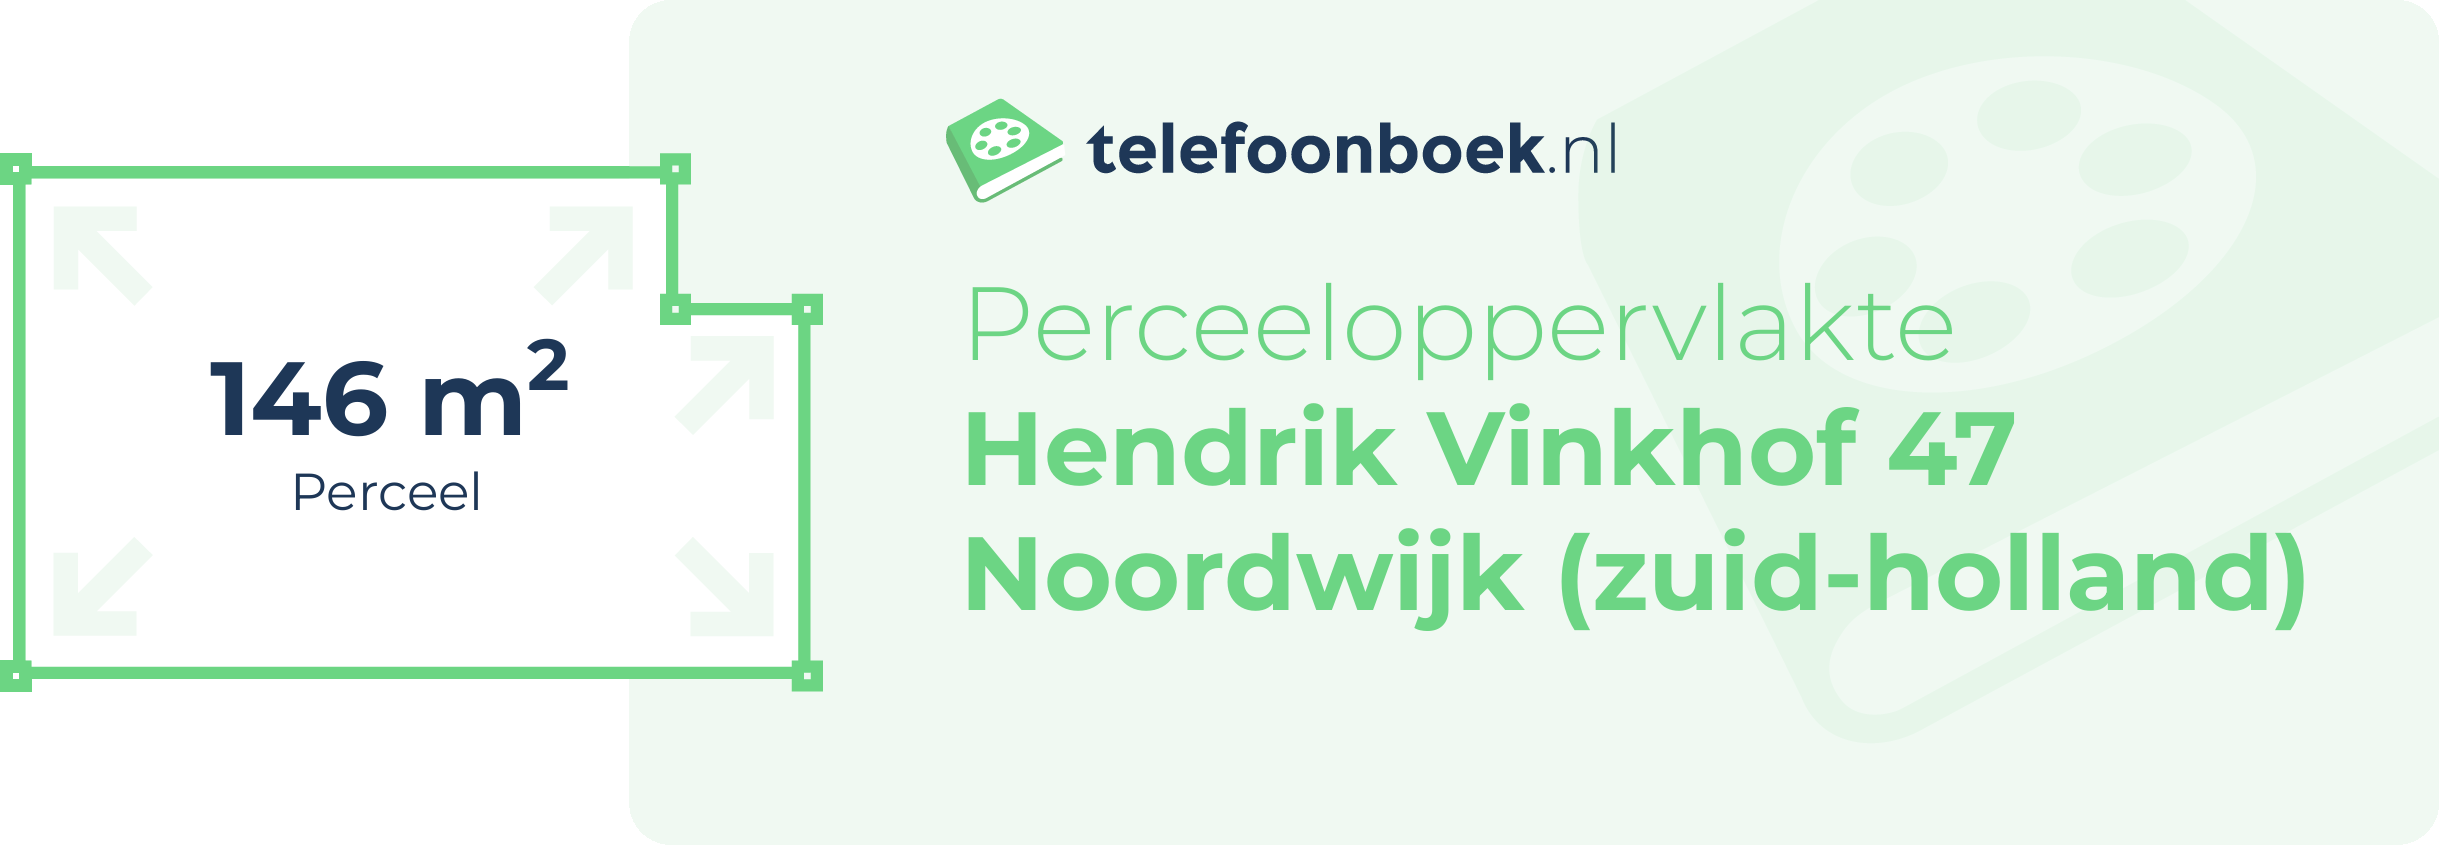 Perceeloppervlakte Hendrik Vinkhof 47 Noordwijk (Zuid-Holland)